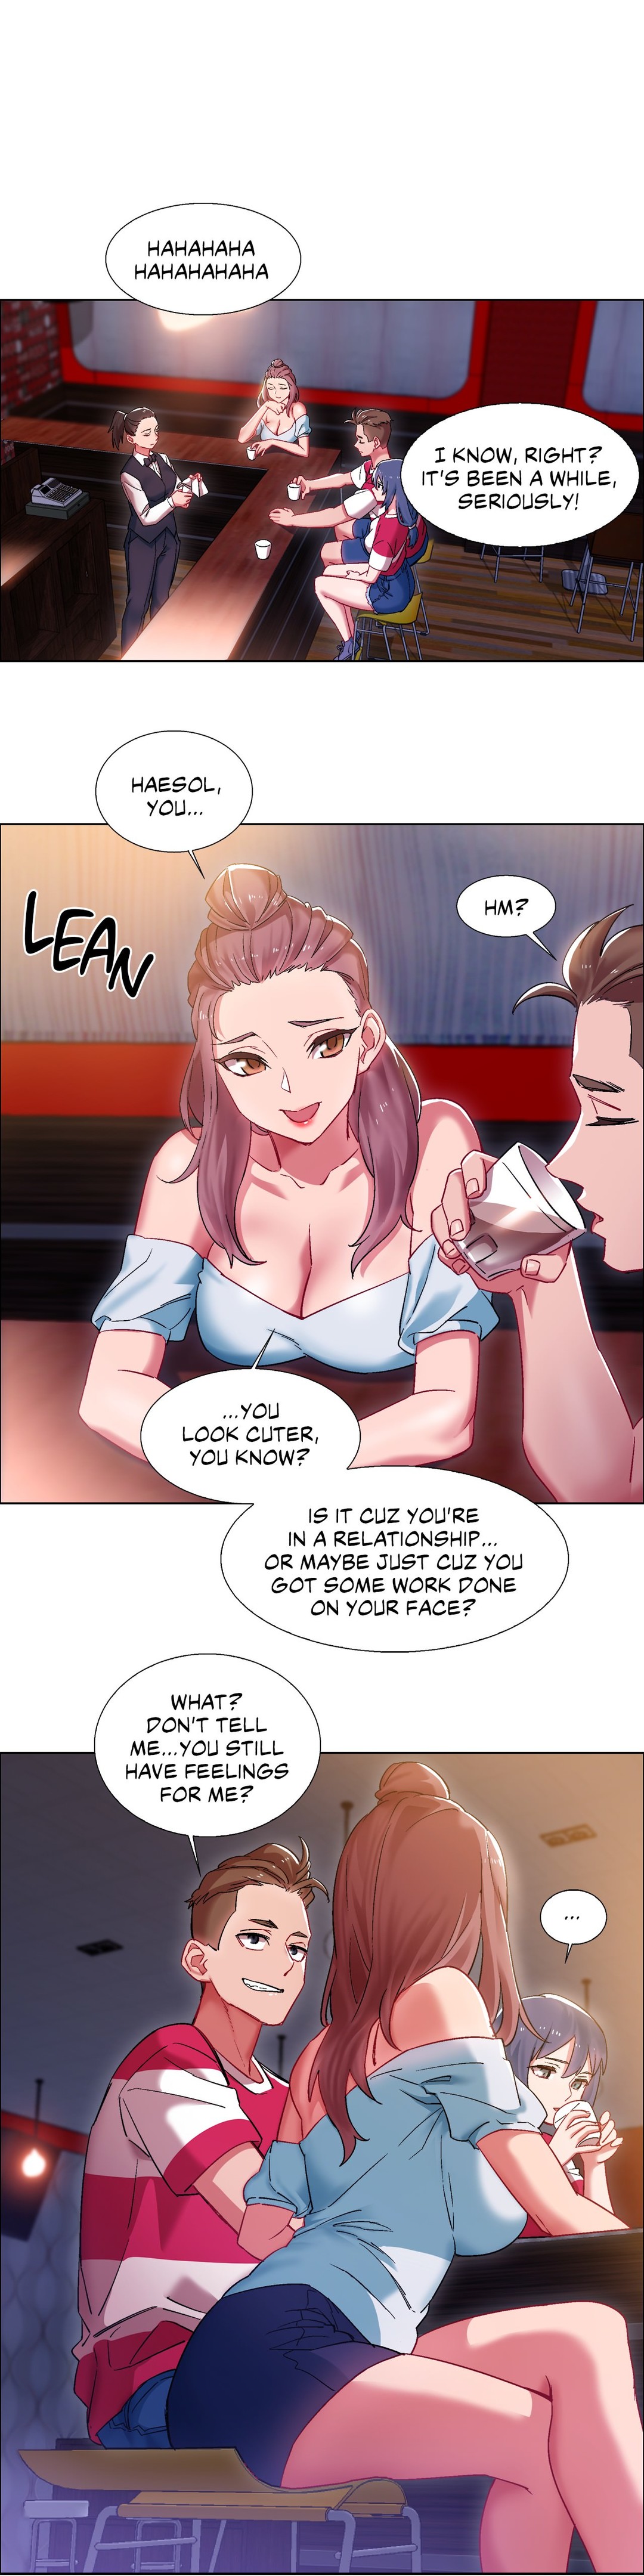 You porn manga in Busan